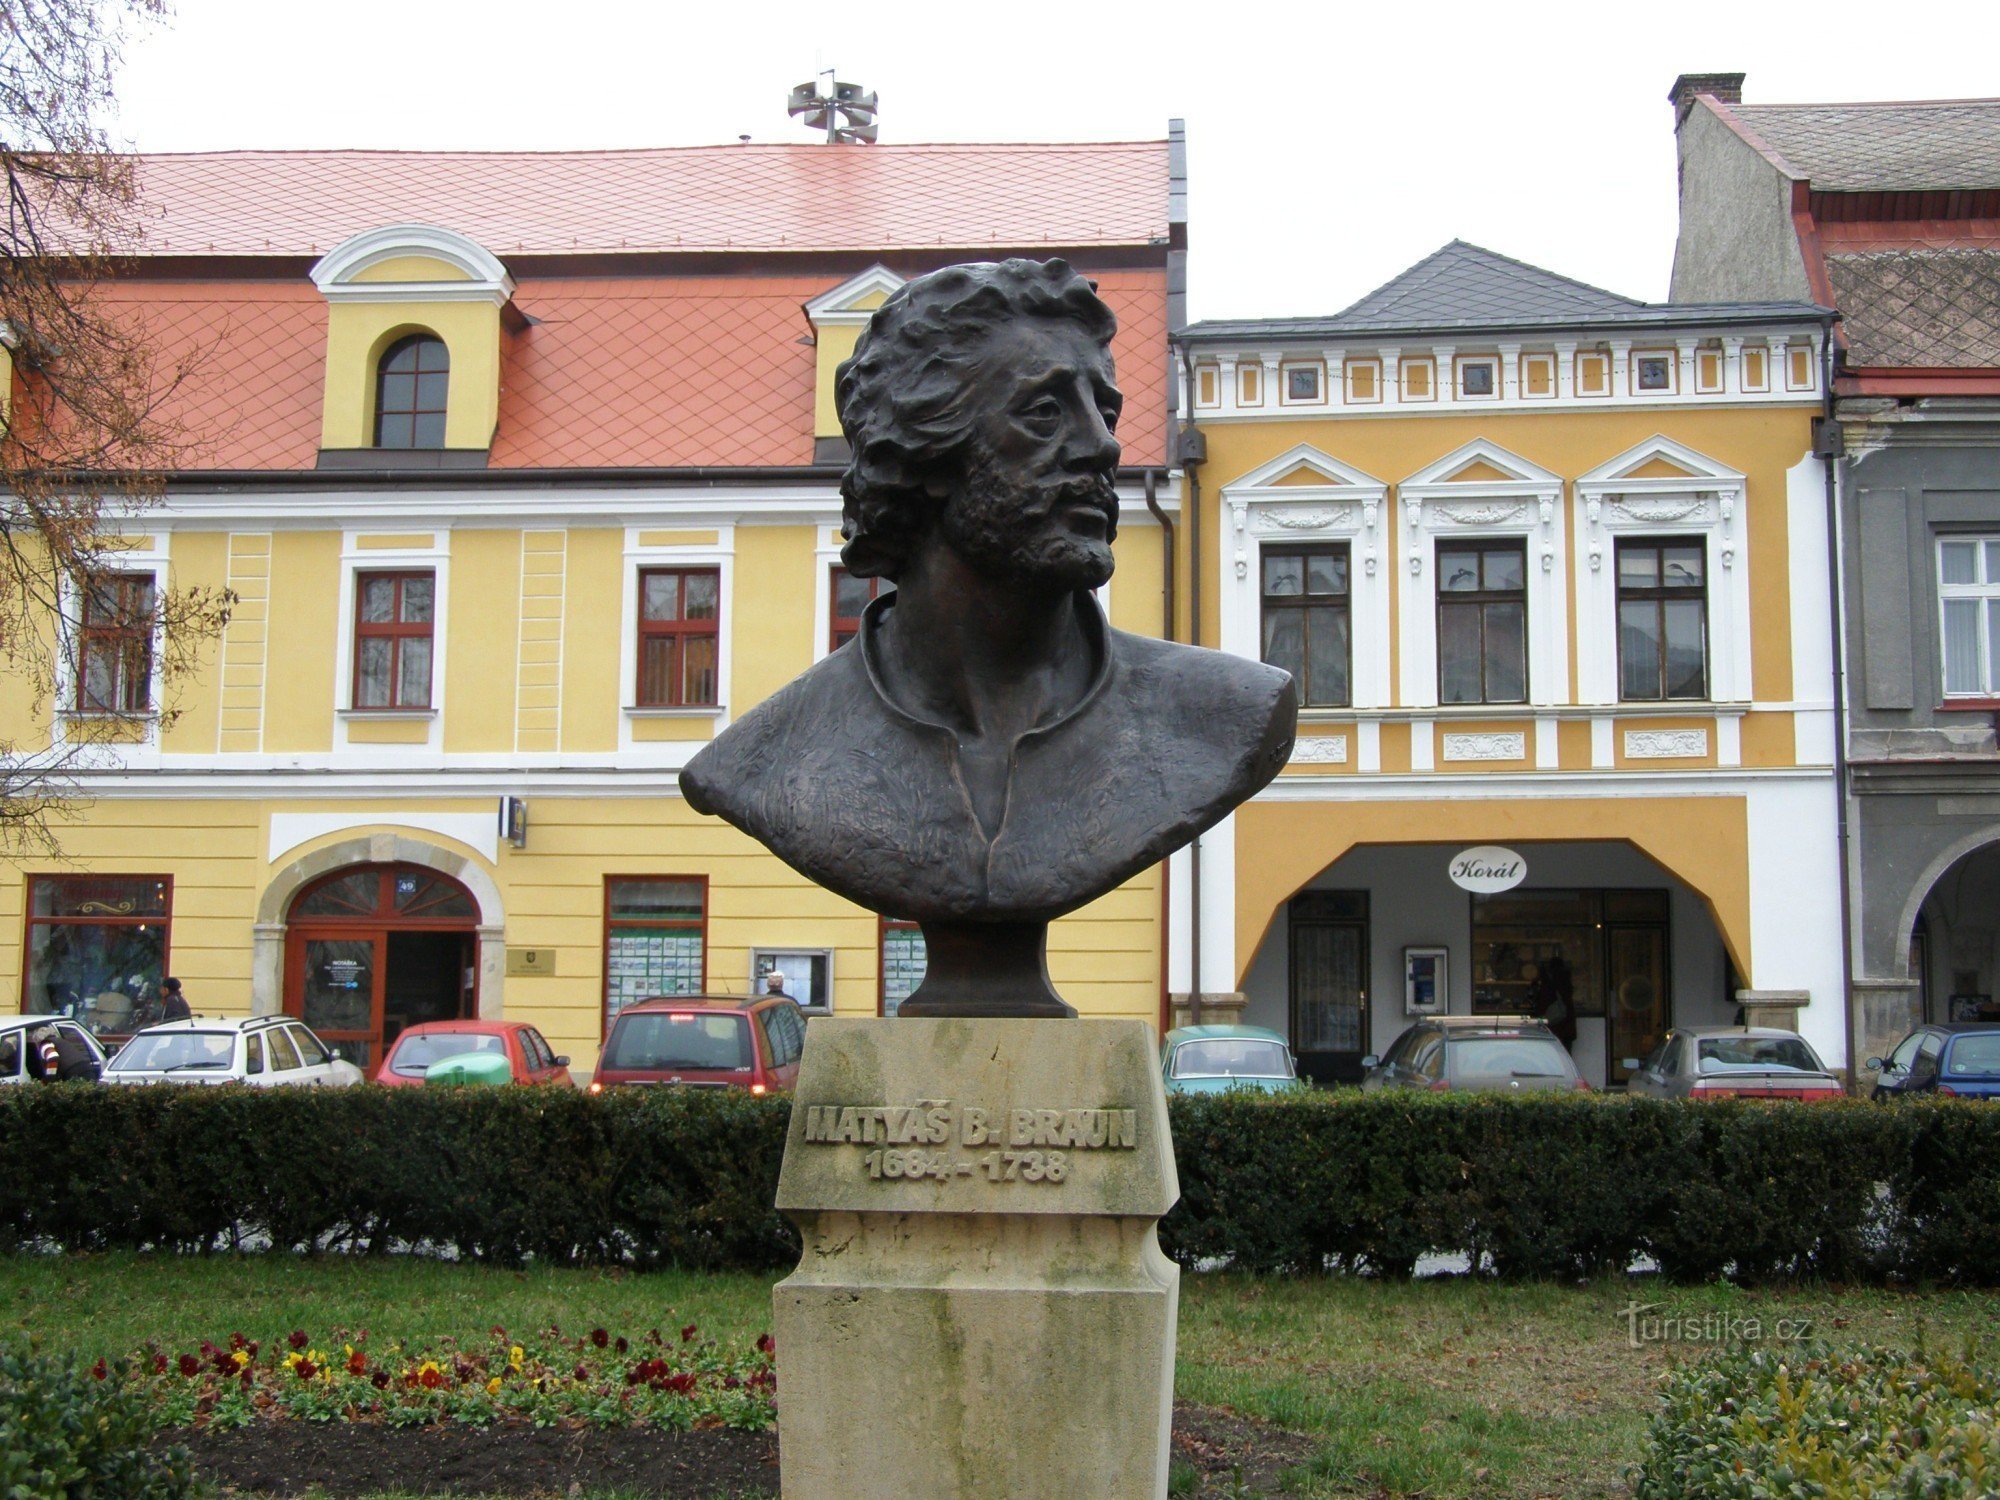 Jaroměř - Czech Army Square